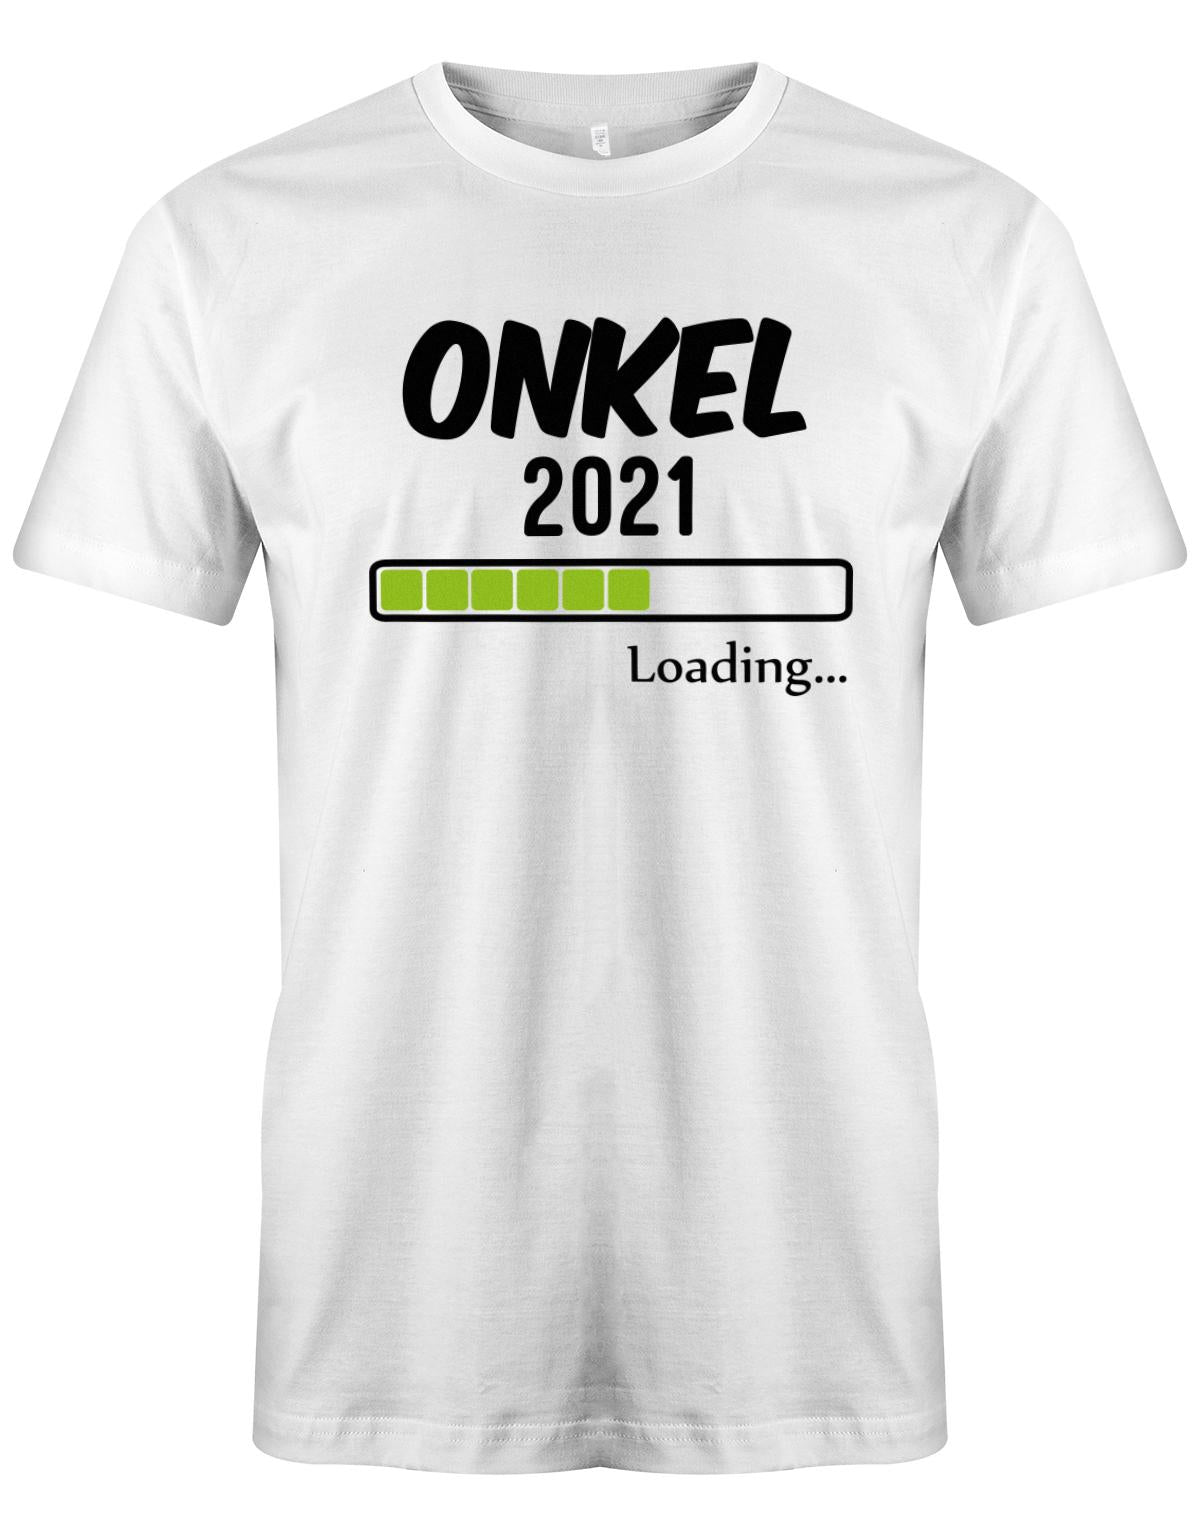 Onkel-loading-2021-Herren-Shirt-Weiss